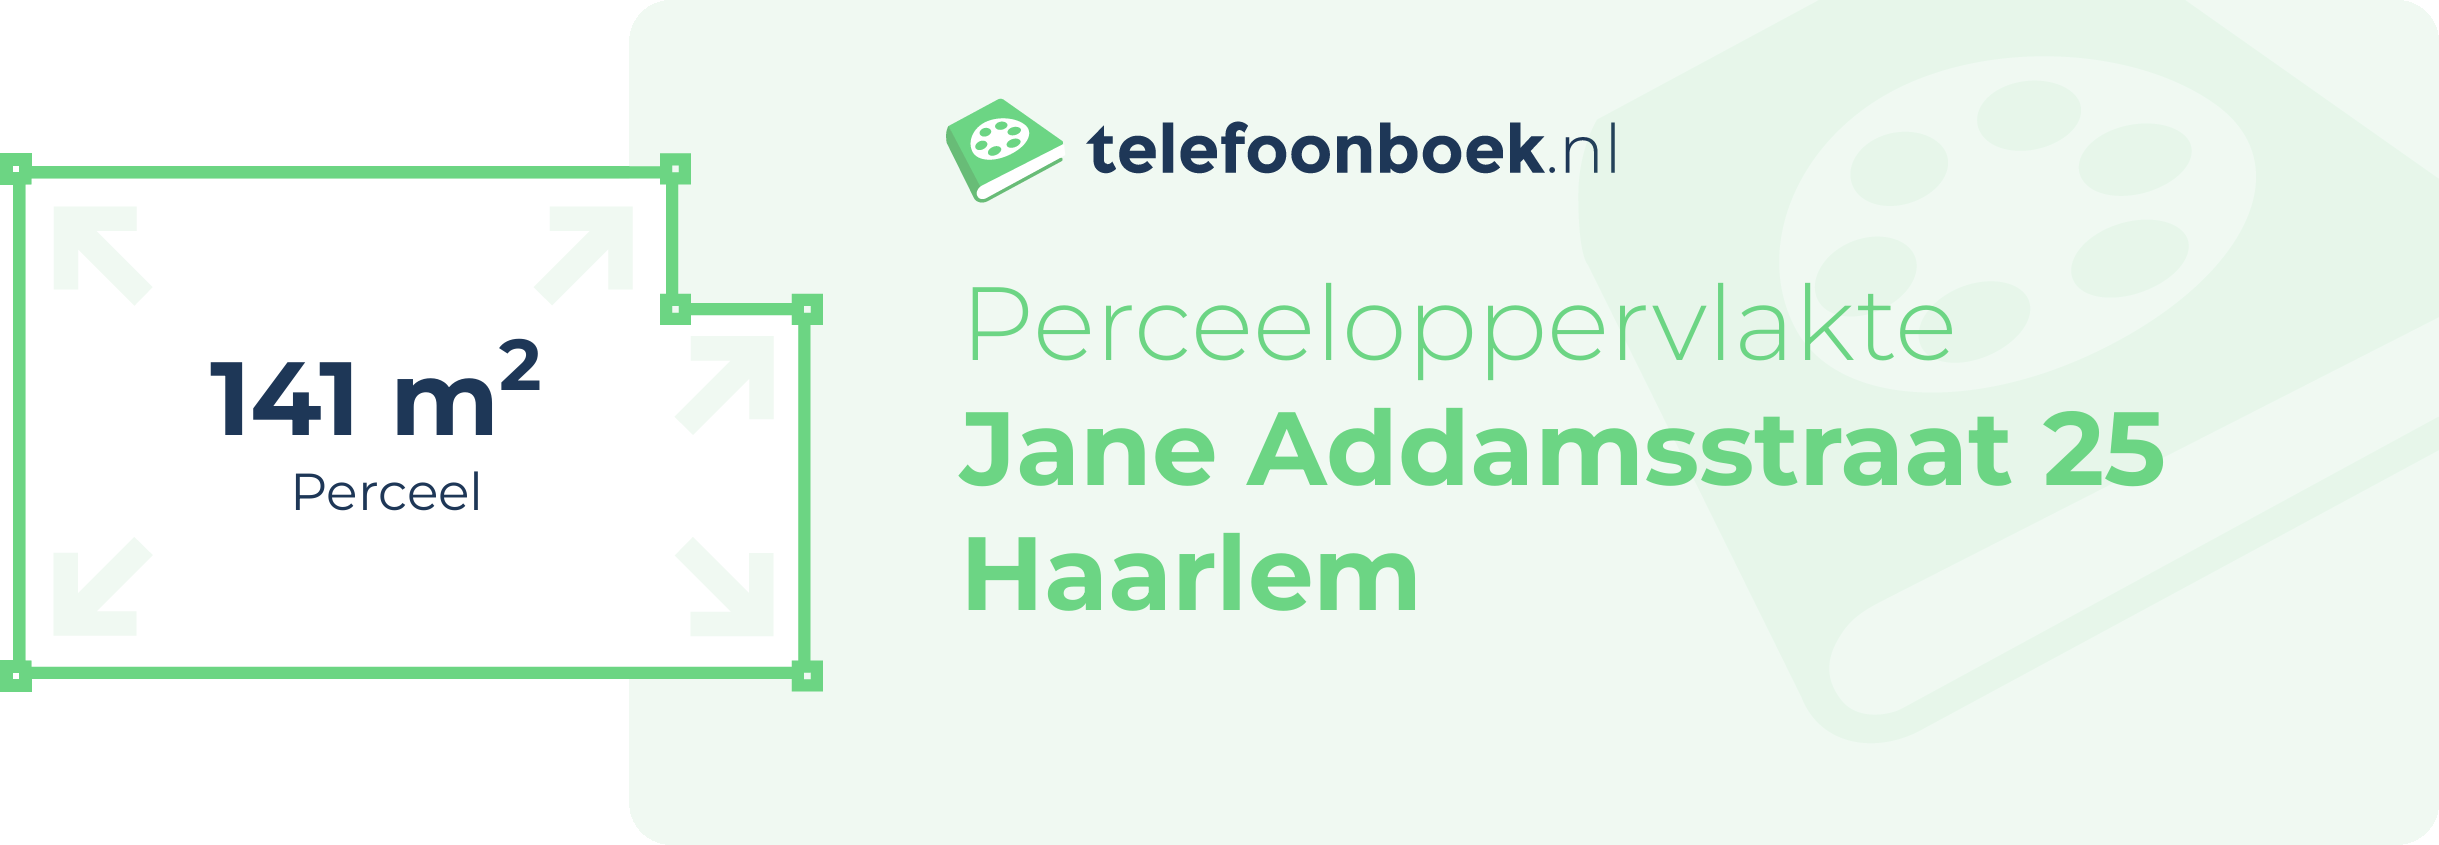 Perceeloppervlakte Jane Addamsstraat 25 Haarlem